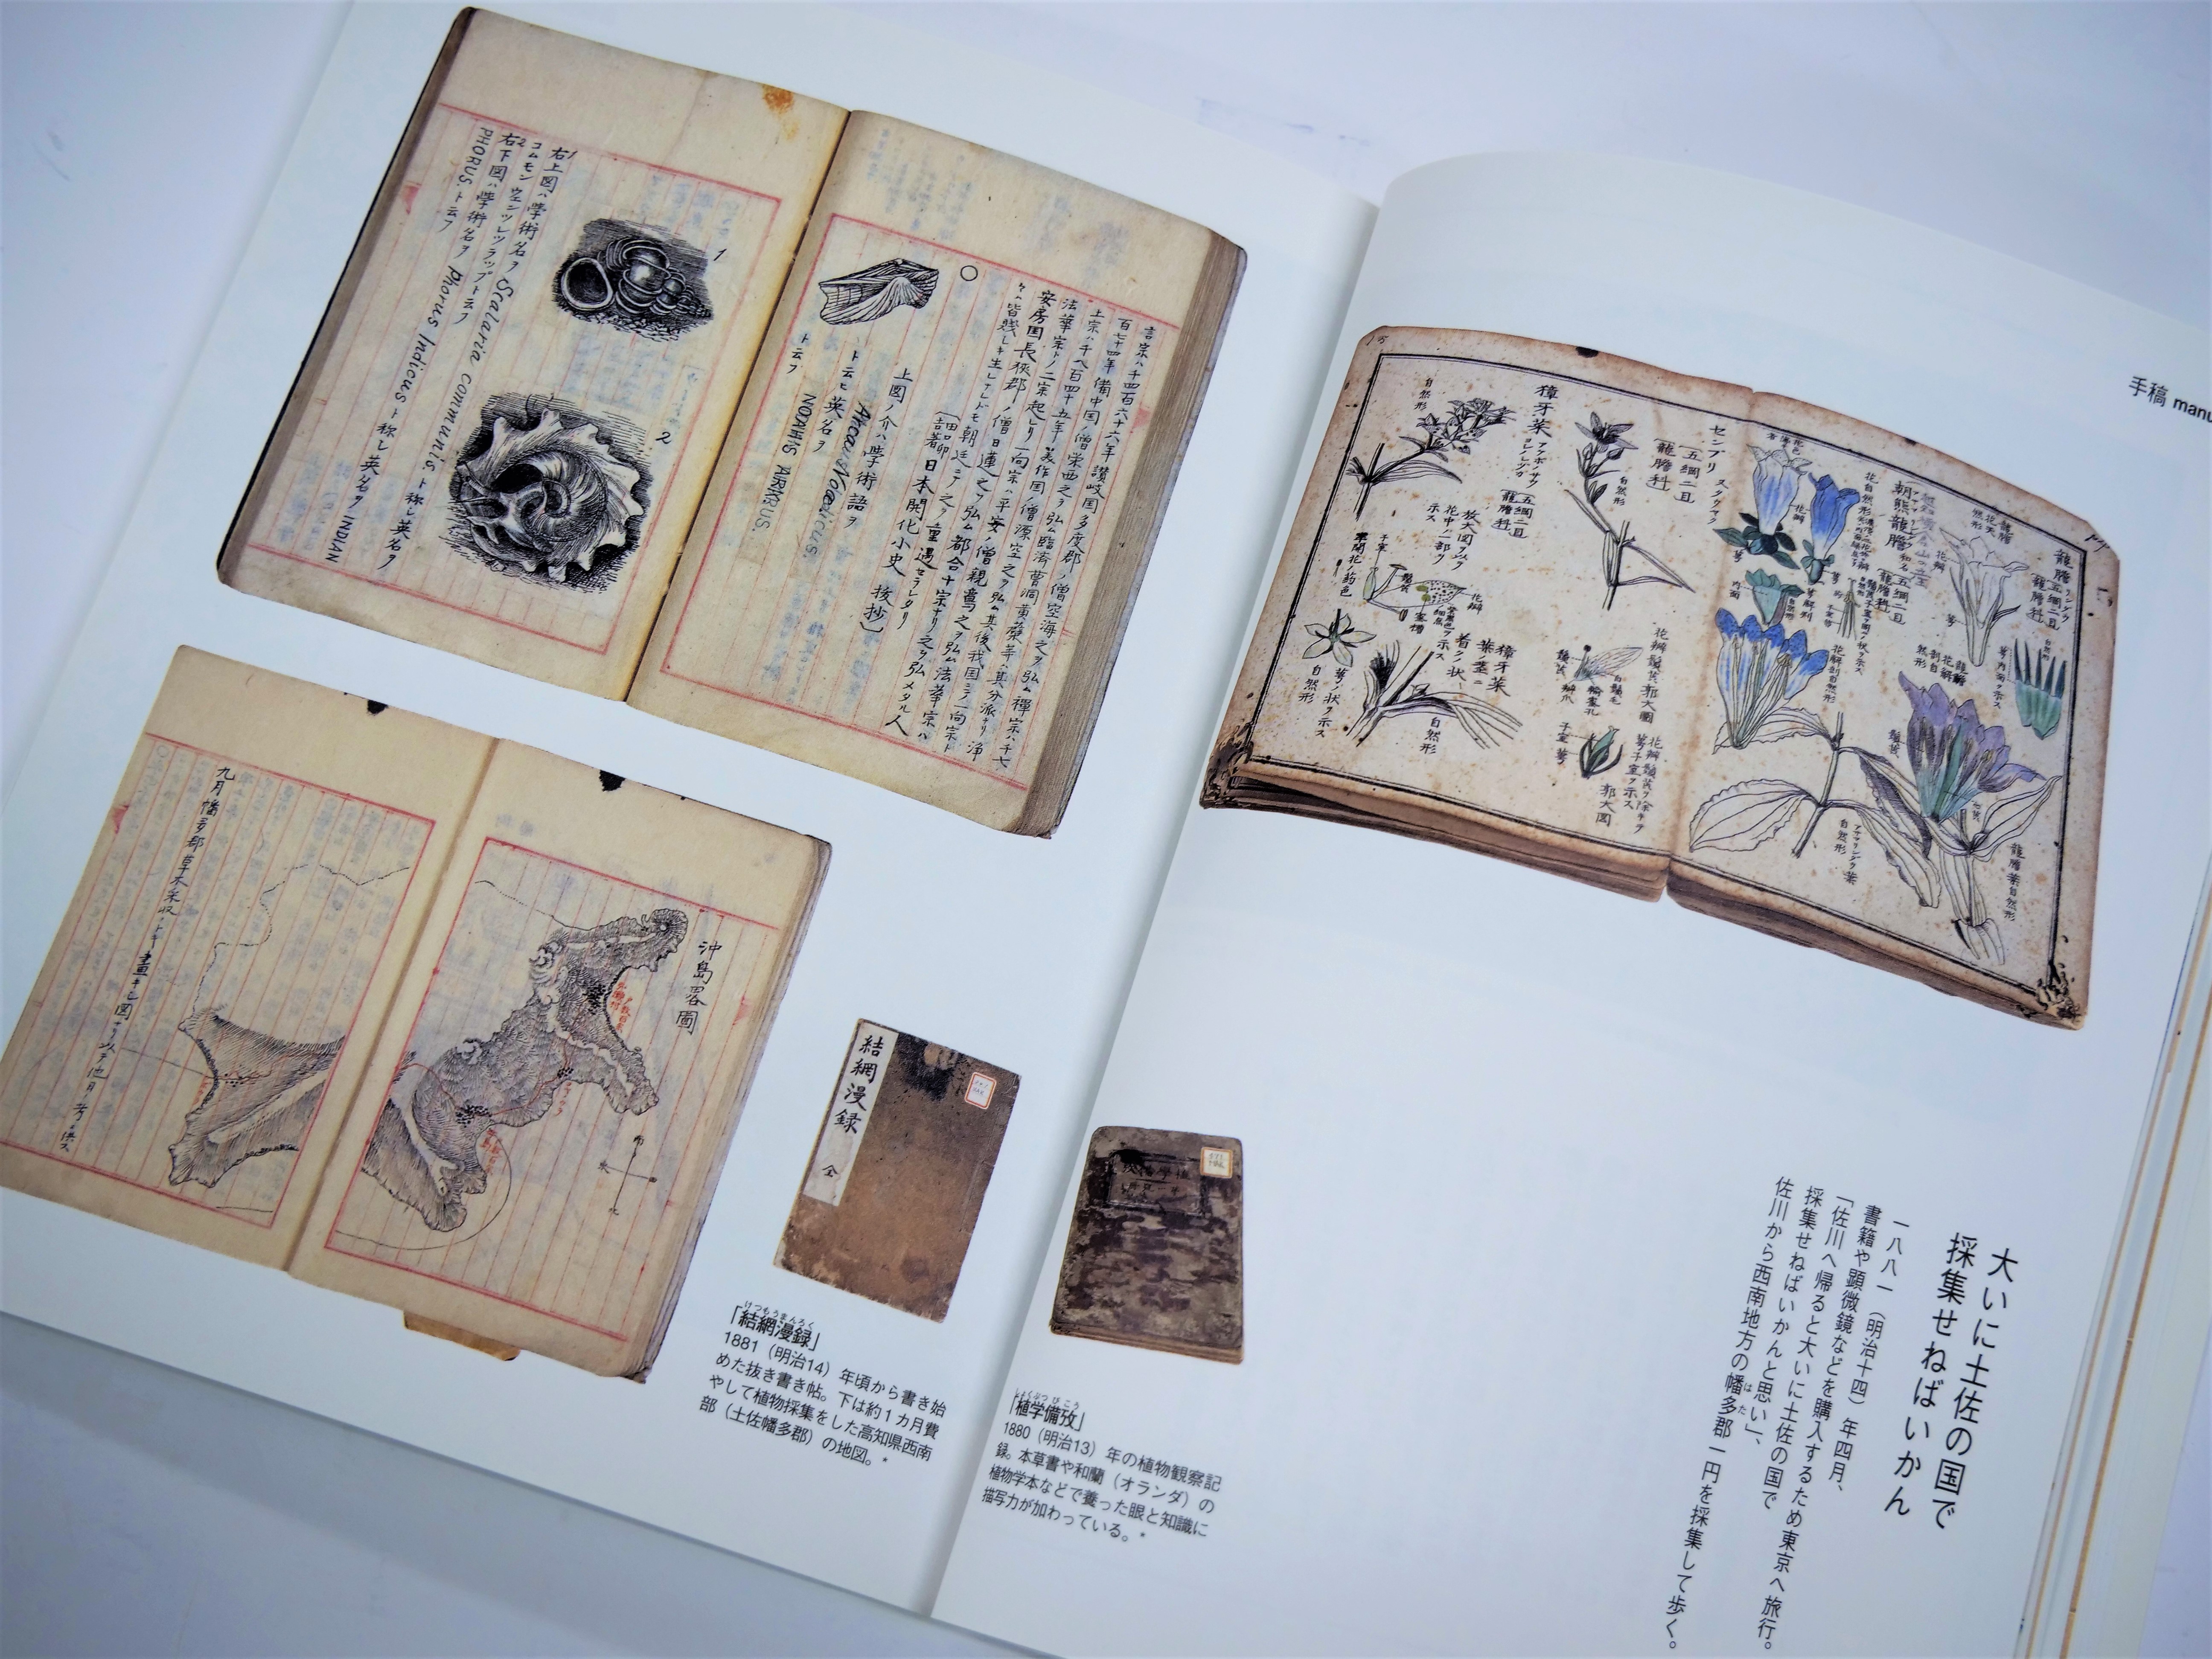 豊かな言葉とスケッチ、写真で綴る牧野富太郎のビジュアル版自叙伝決定 